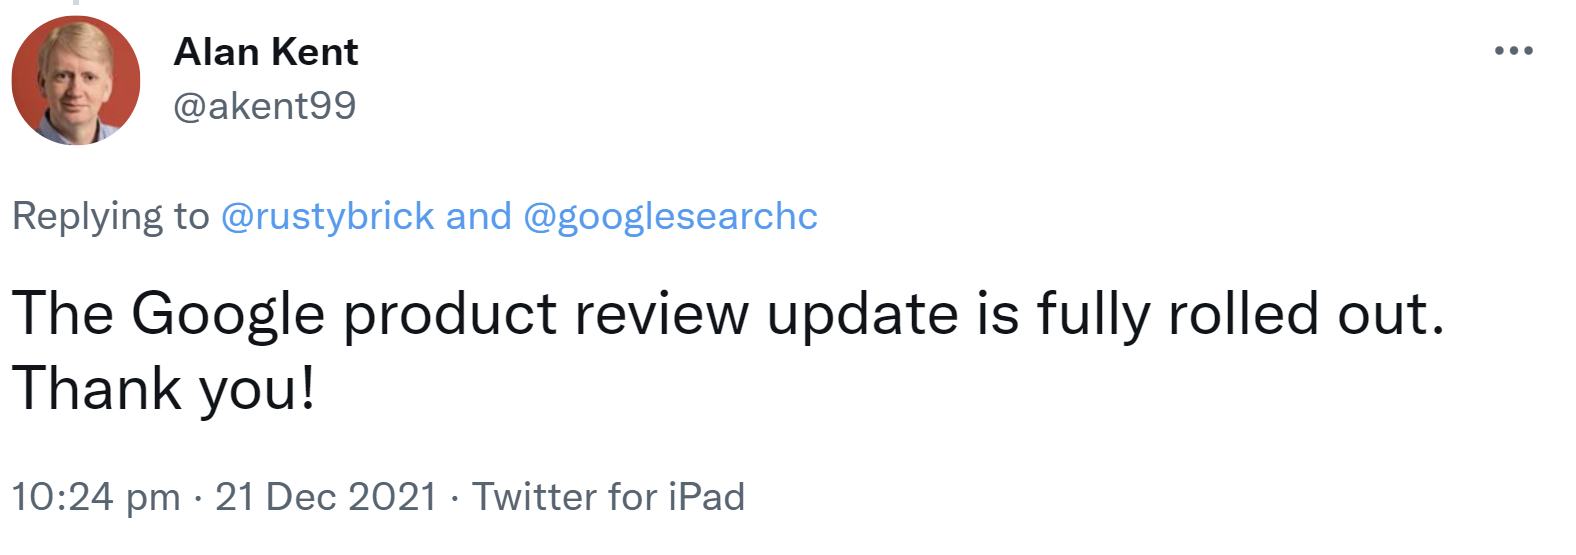 Google Product Reviews Update Dezember 2021: Rollout ist abgeschlossen